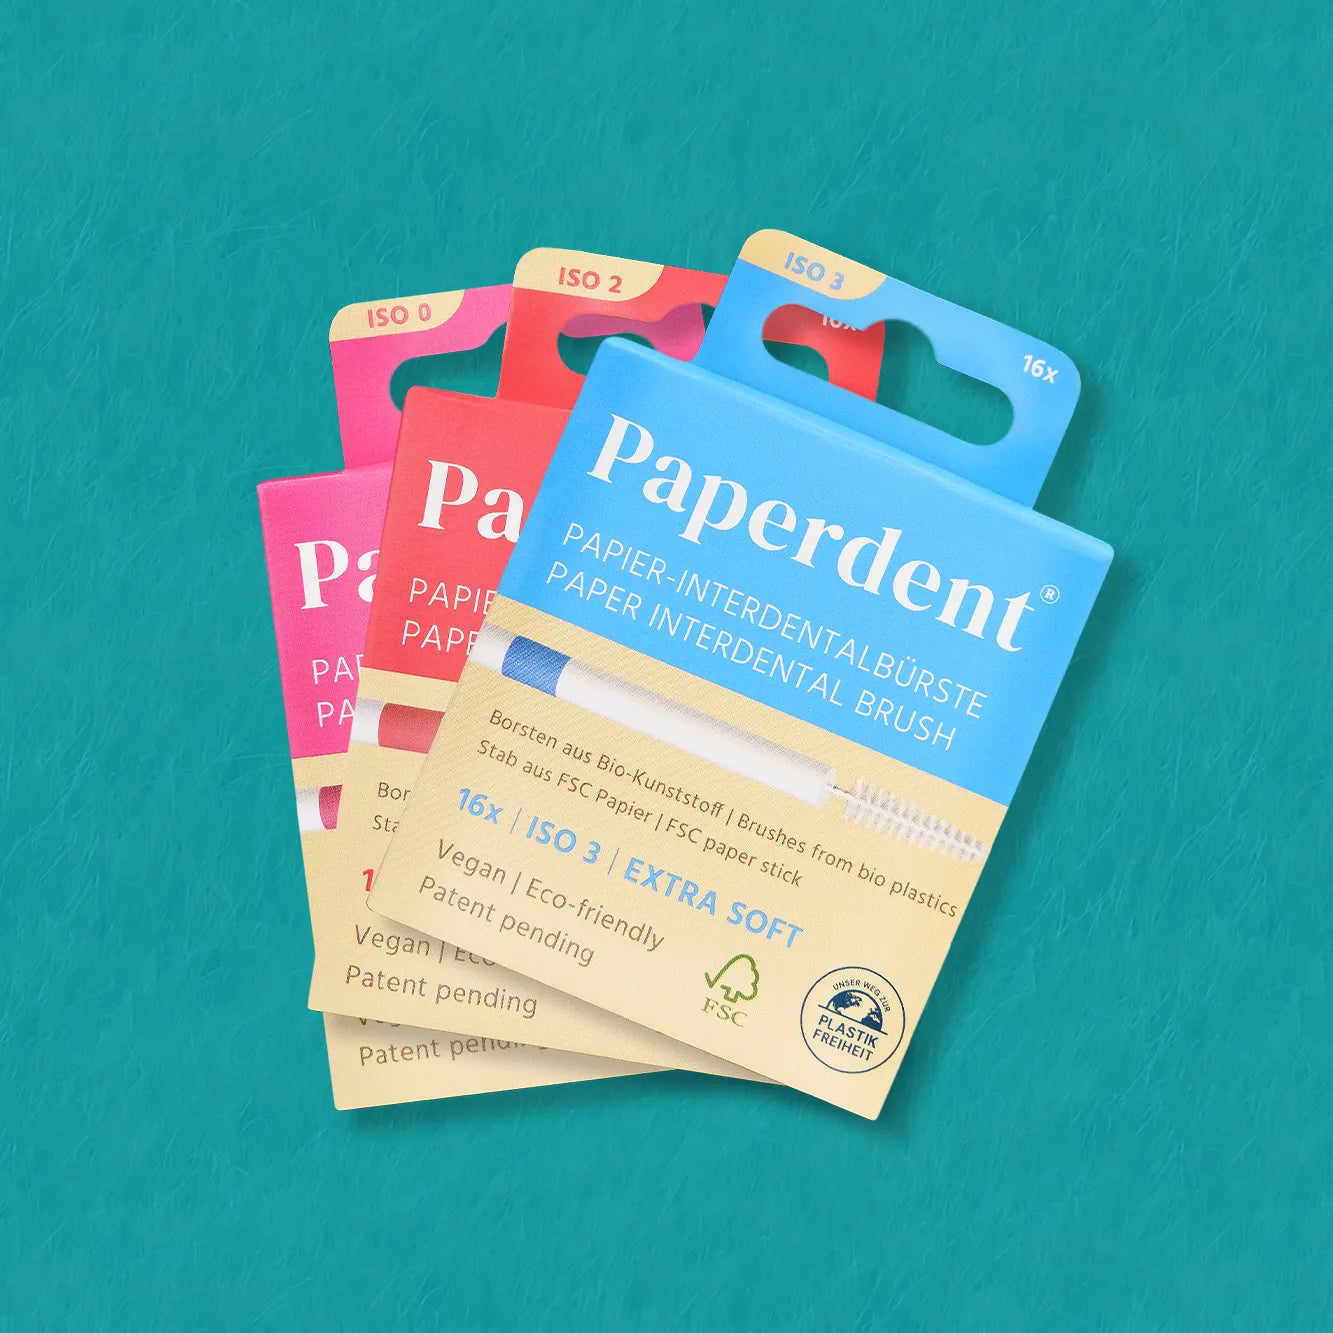 Paperdent Interdentalbürste aus Papier grün-blauer Hintergrund